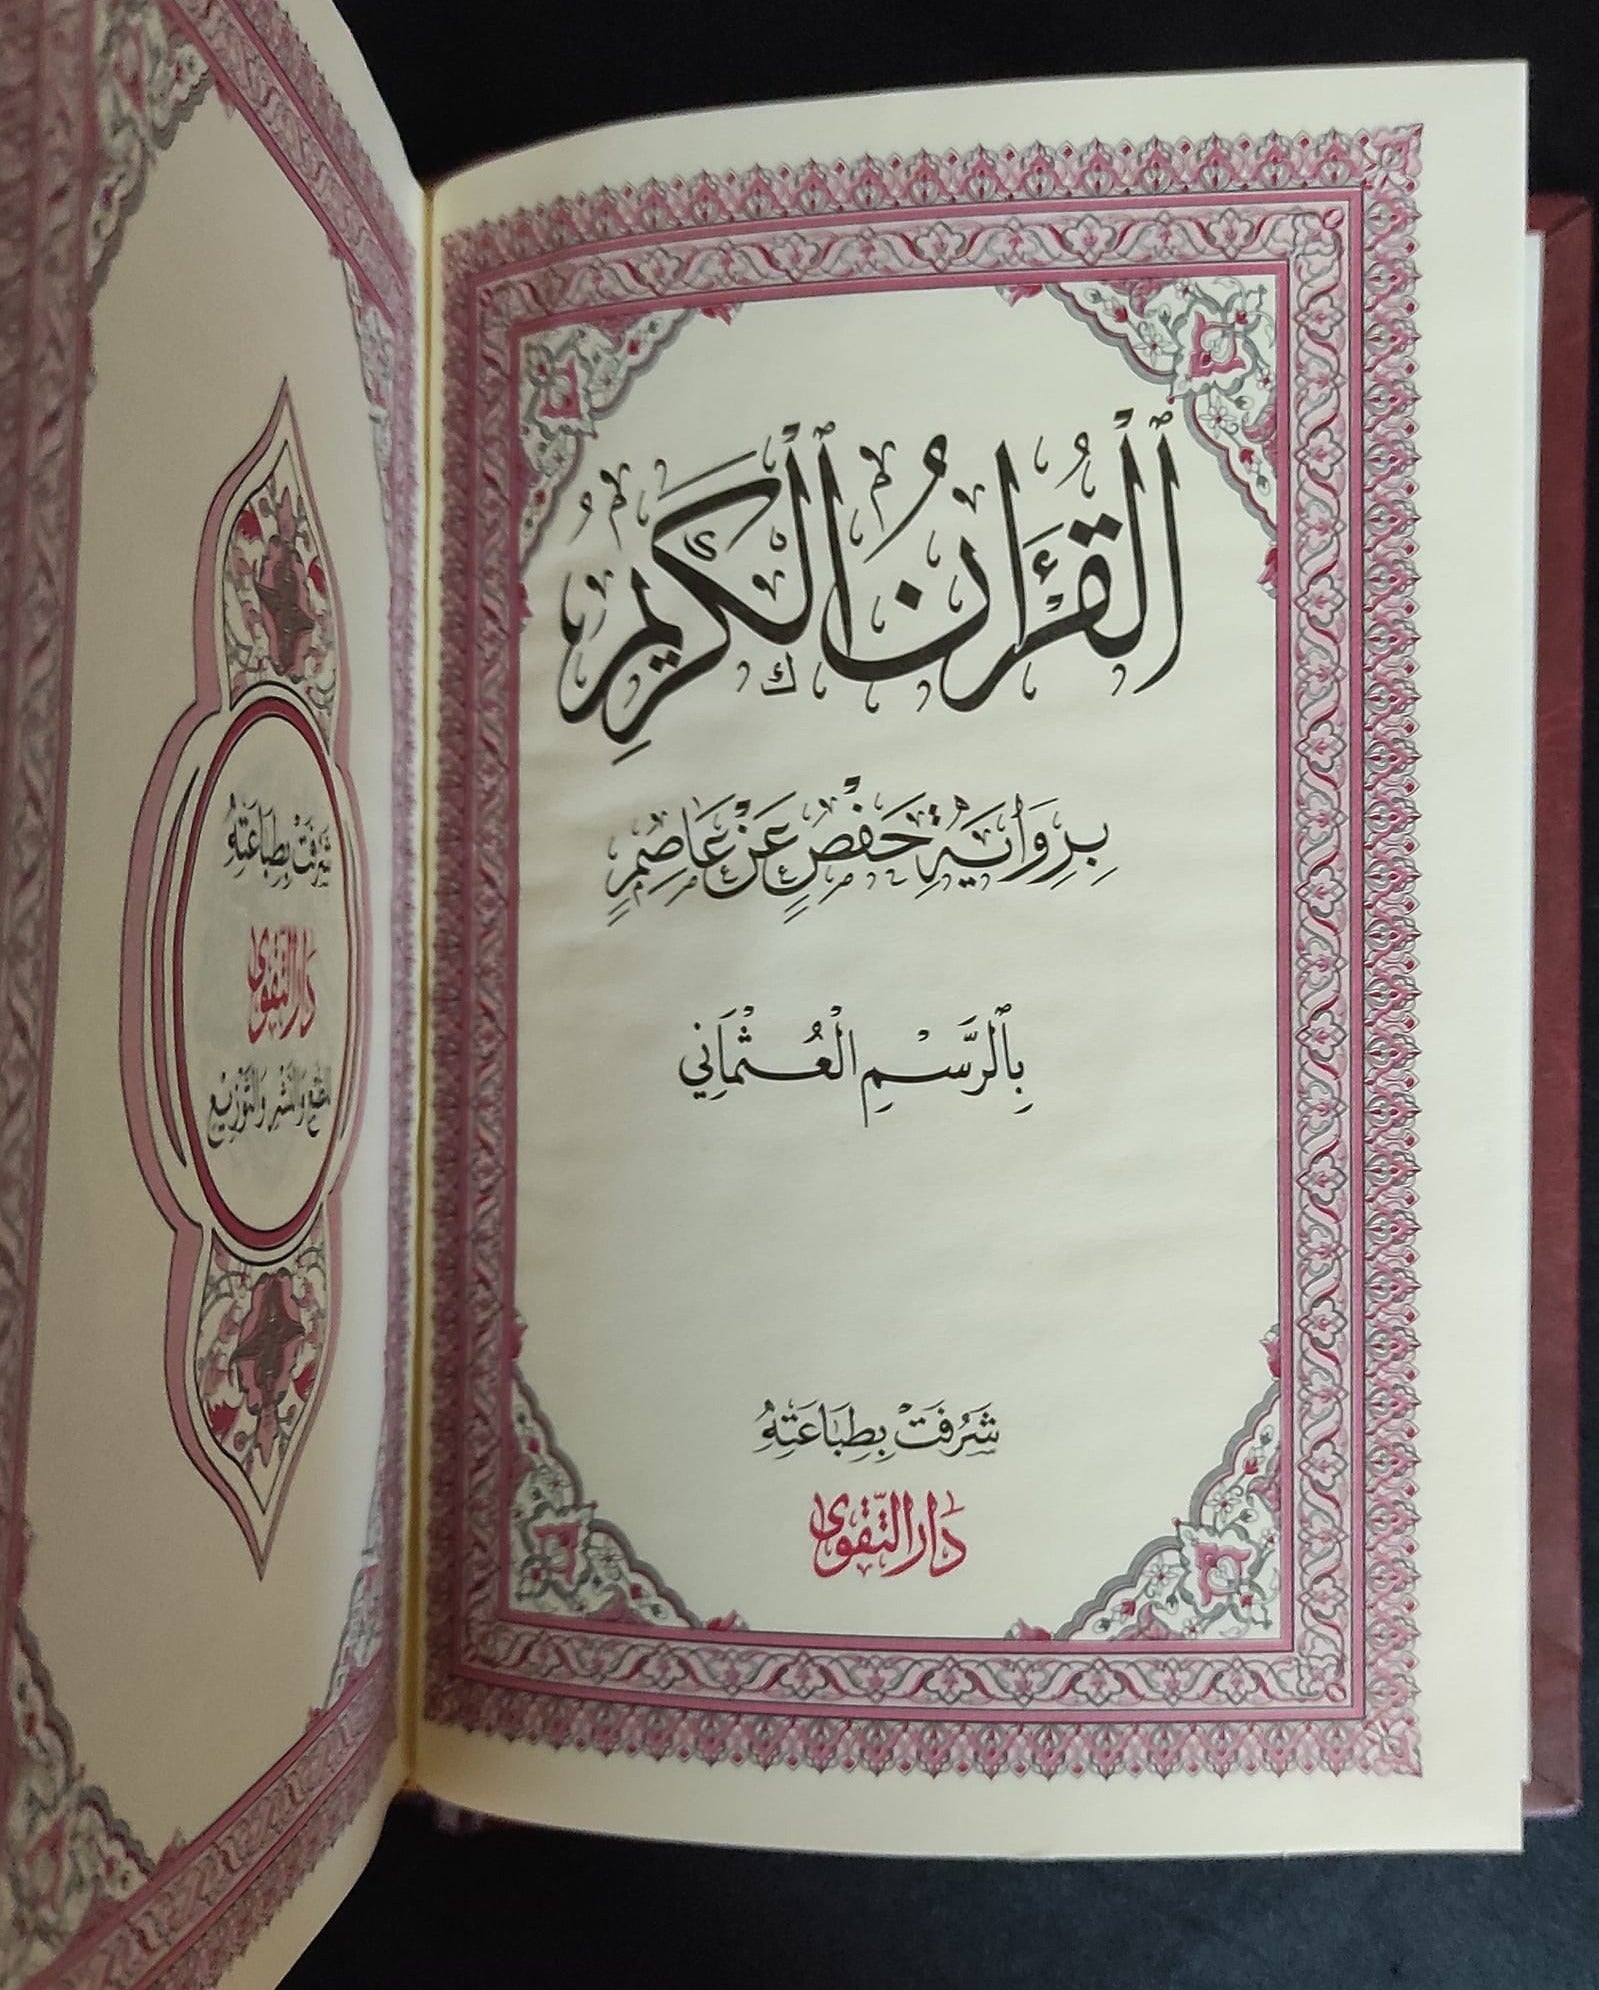 القرآن الكريم بالرسم العثماني كتب إسلامية دار التقوى للنشر والتوزيع